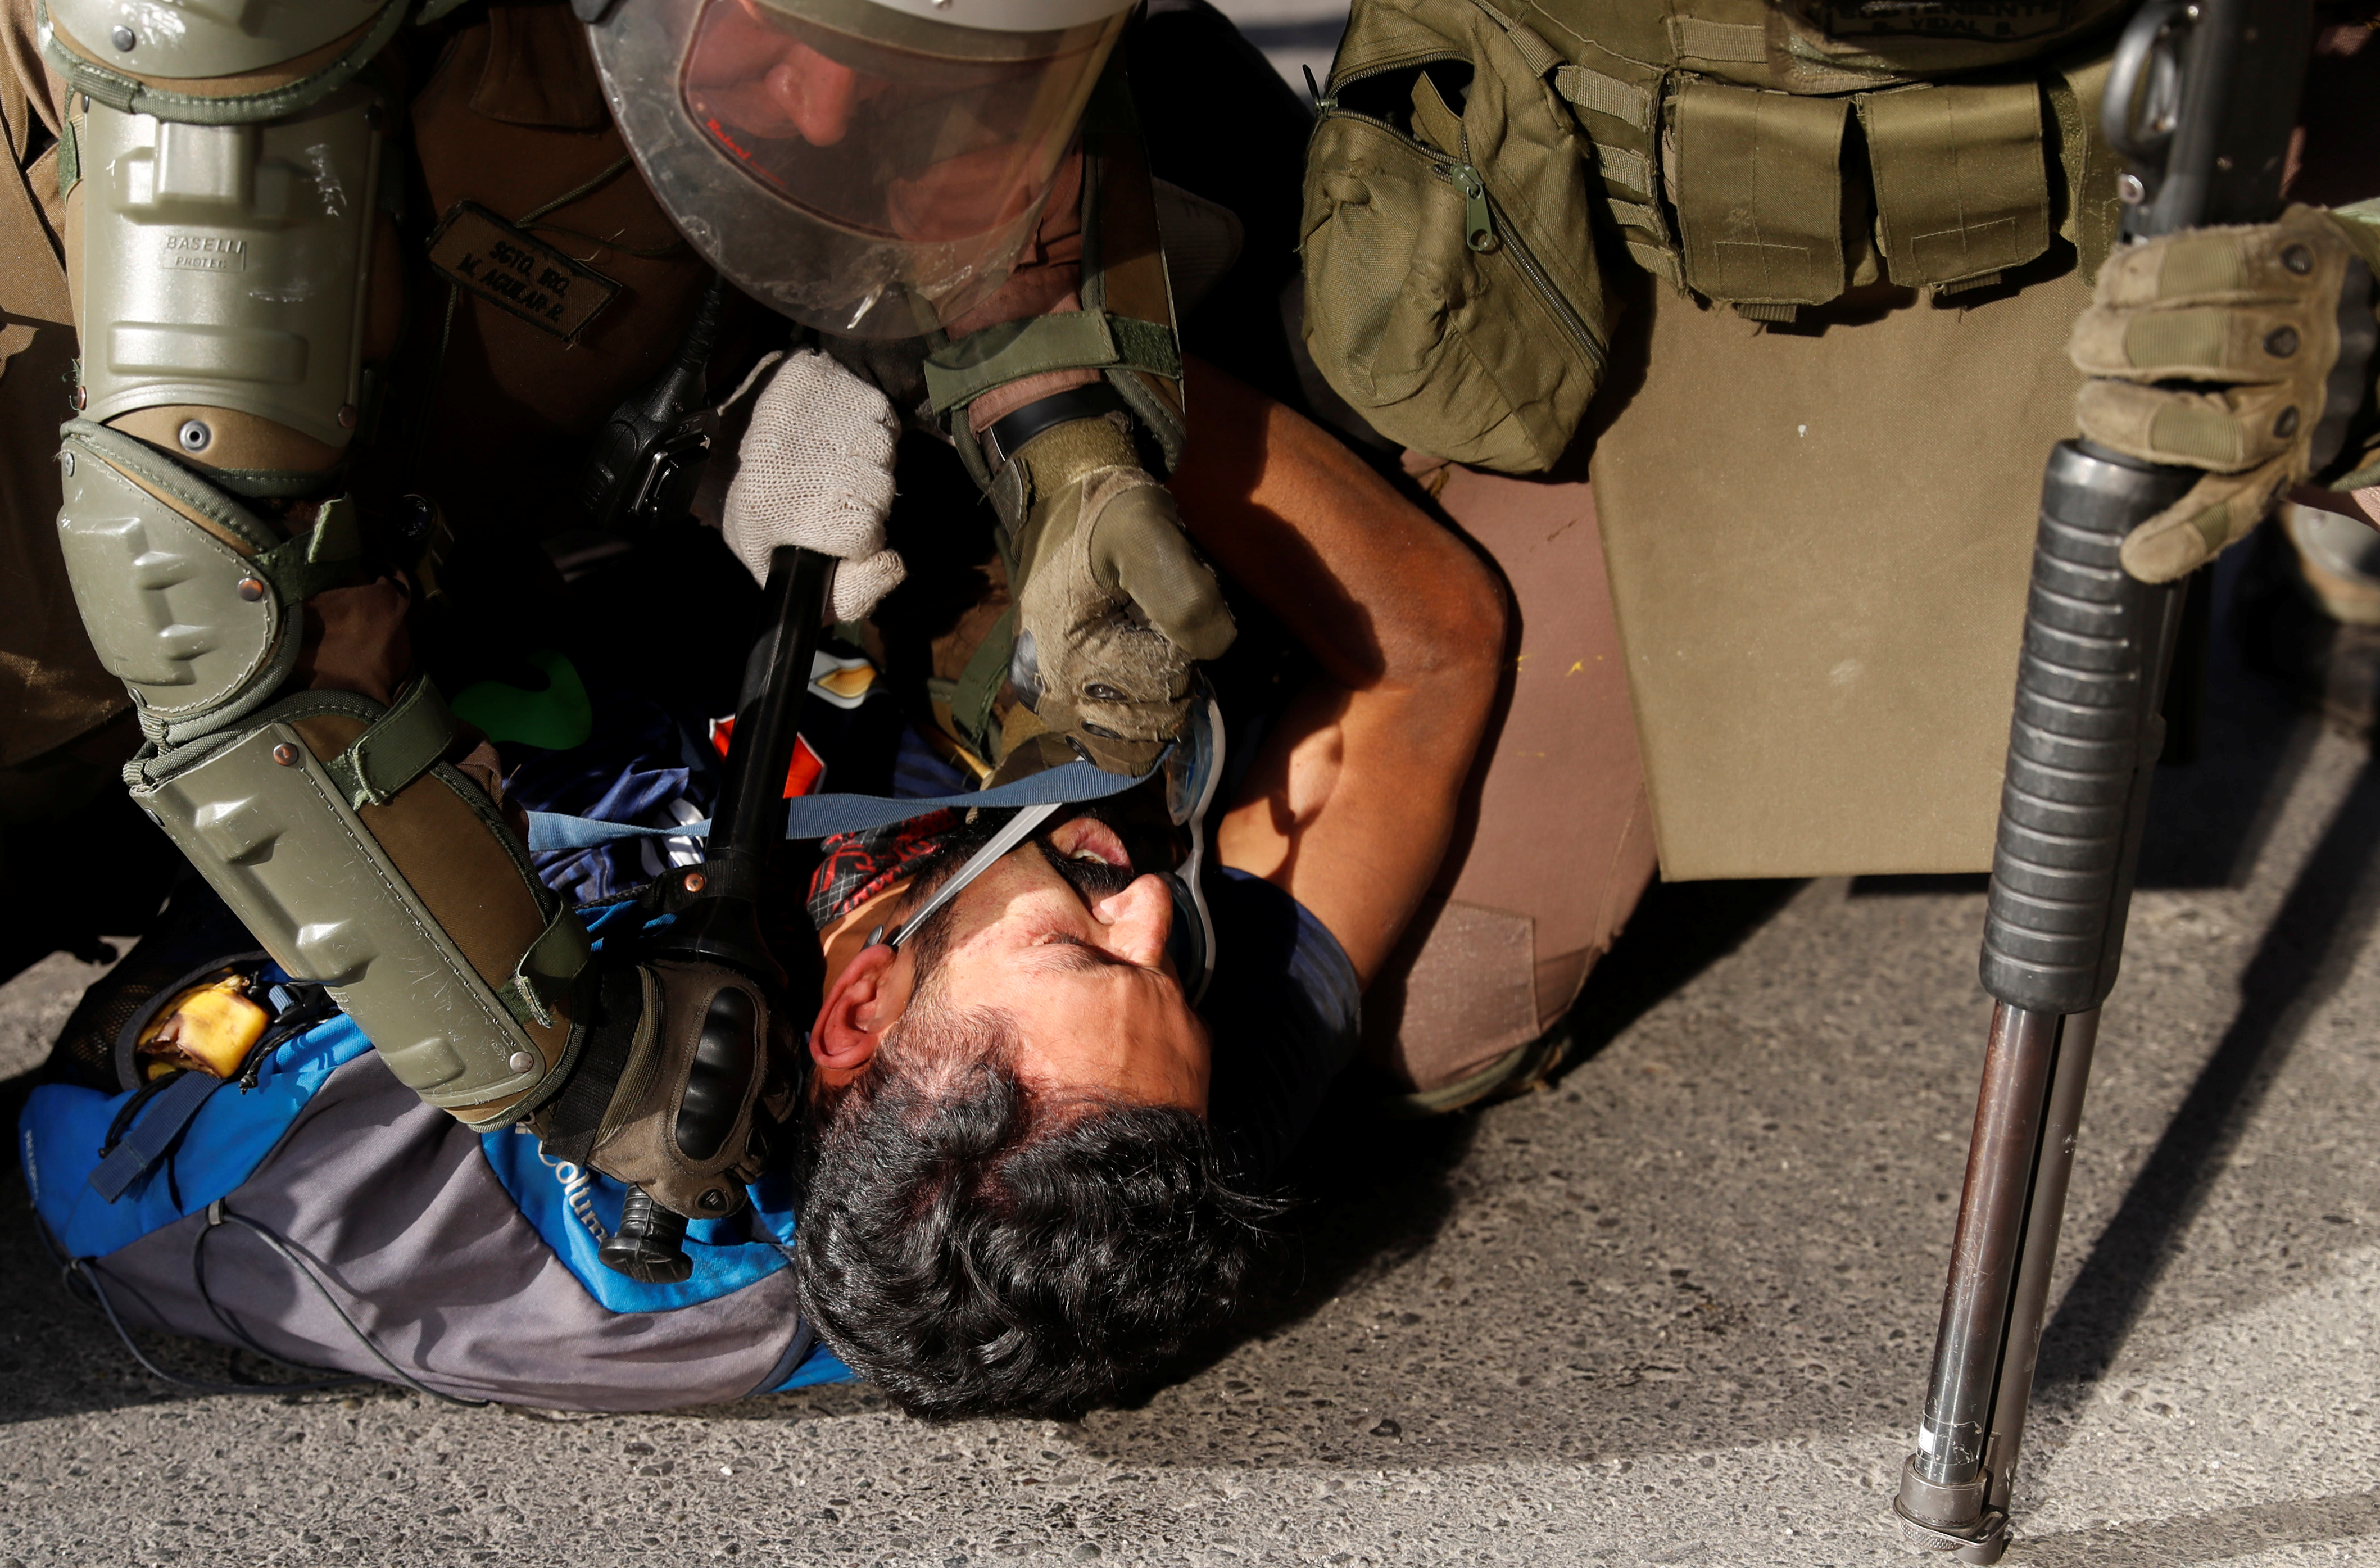 Fuerzas de seguridad chilenas atacaron “intencionalmente” a manifestantes para “castigarlos”